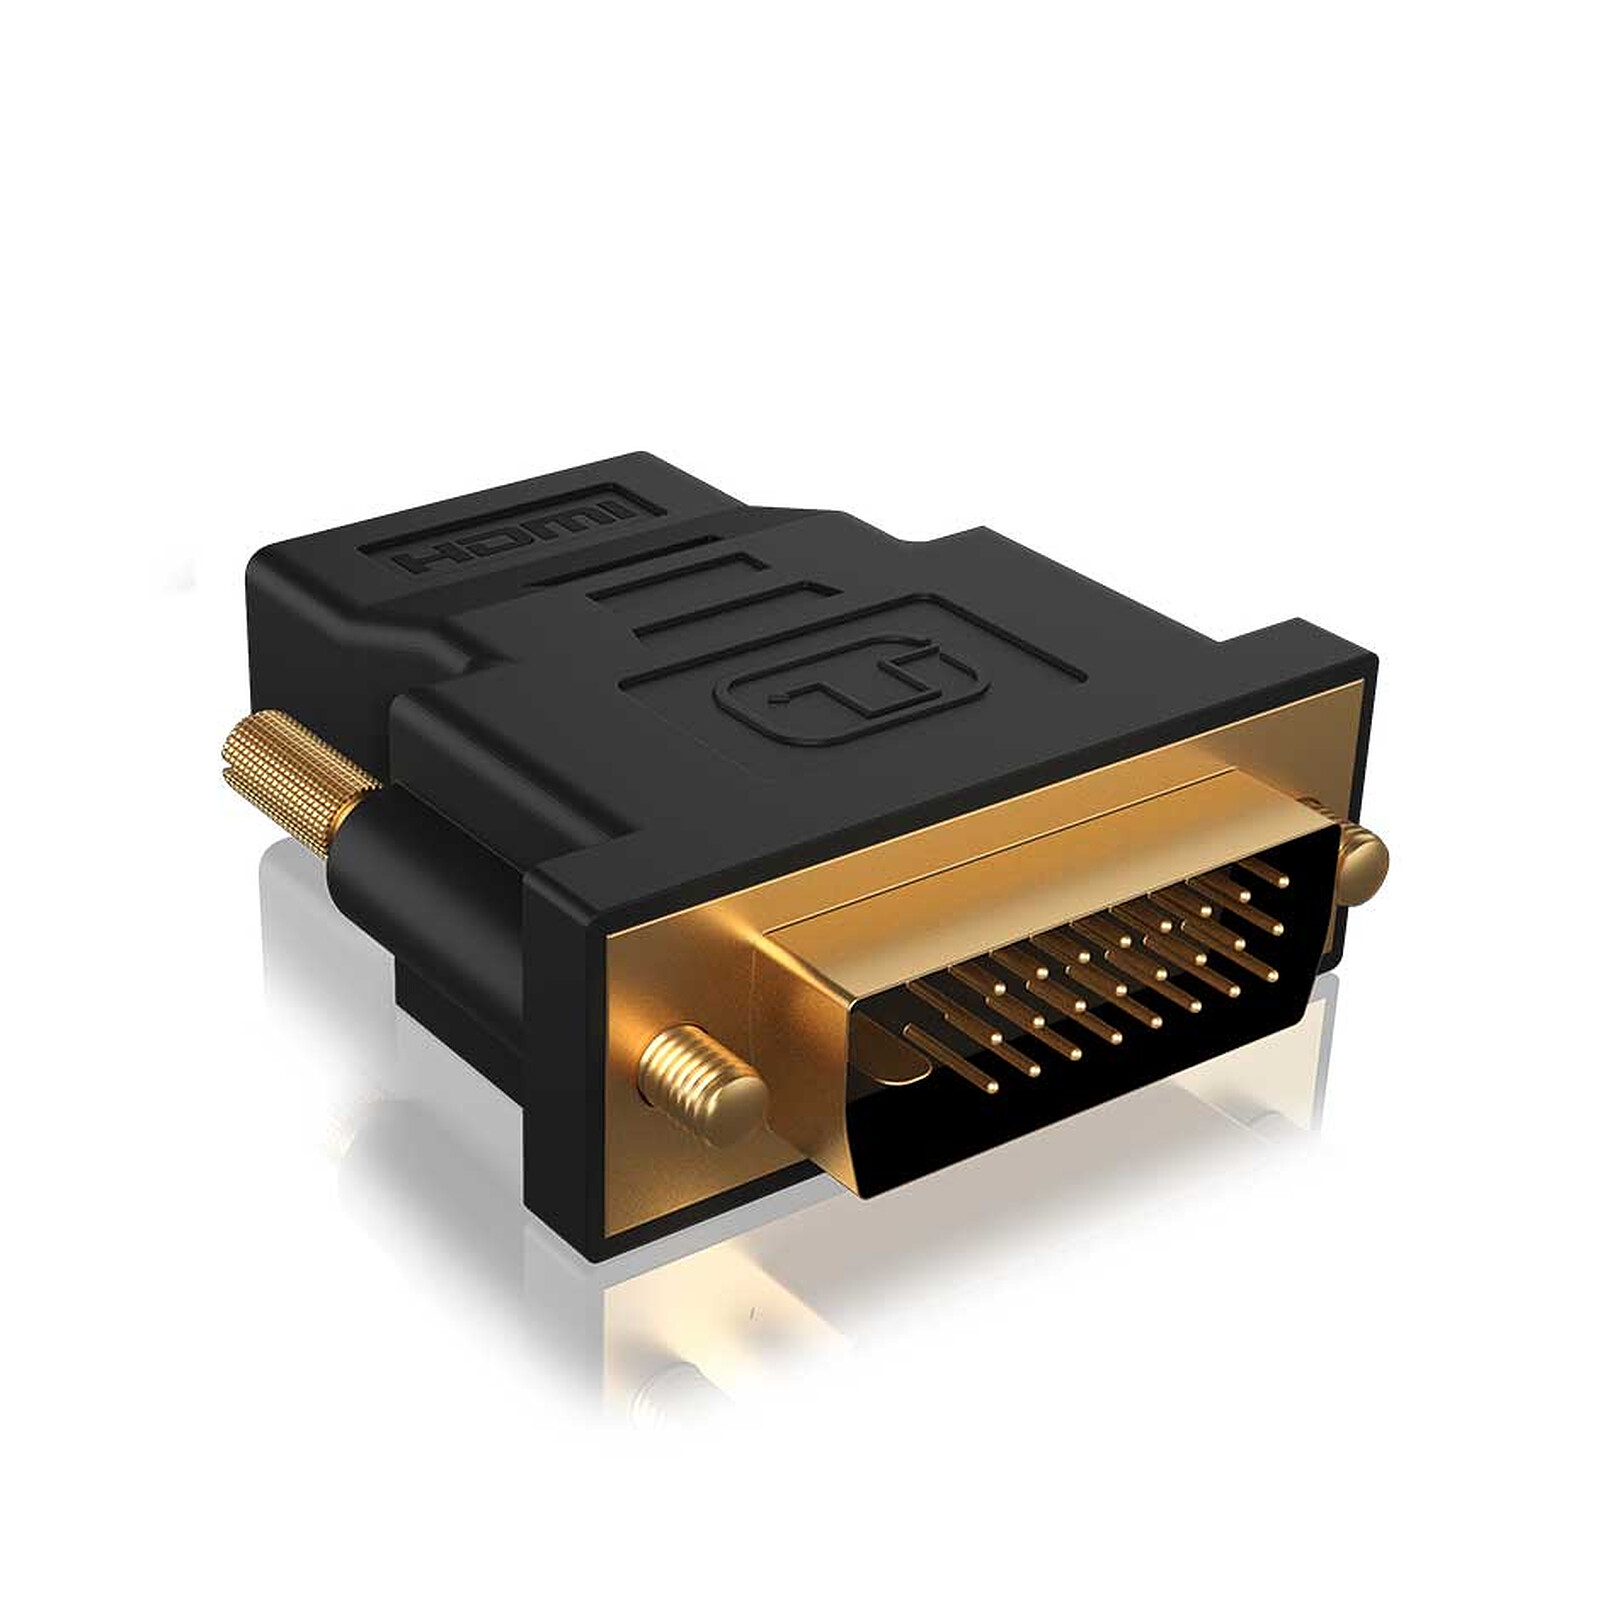 Adaptateur DVI-D mâle / HDMI femelle haute qualité